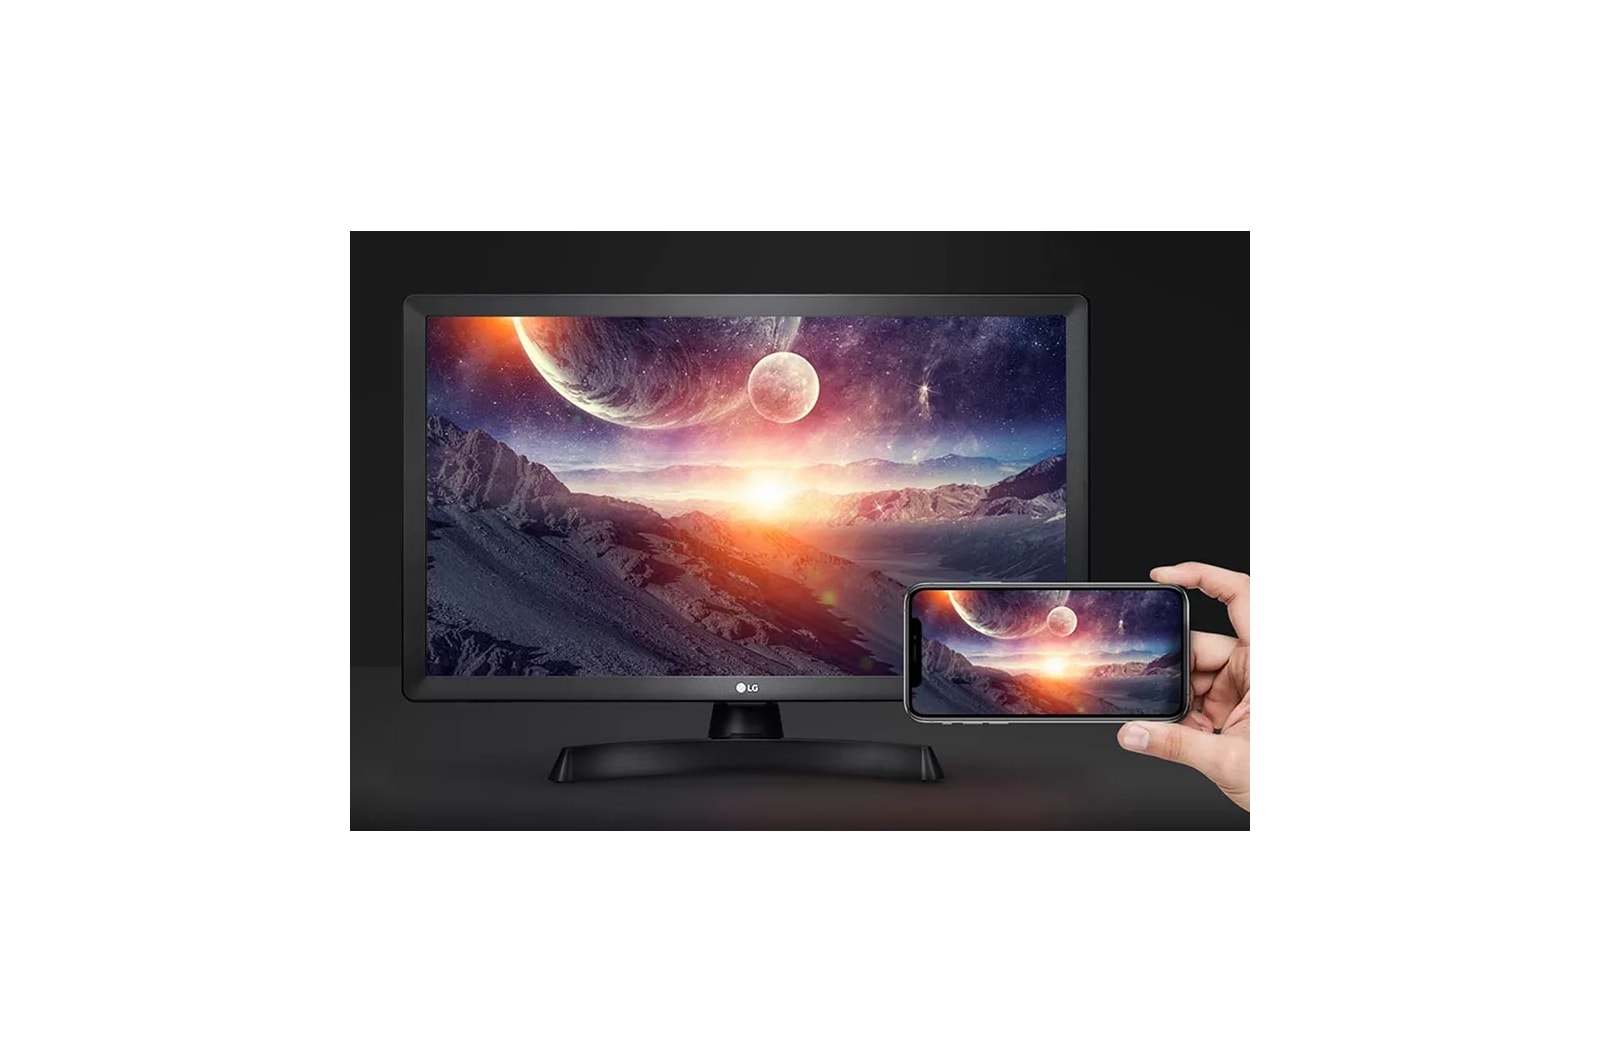 LED LG Smart TV 24 HD 24TL520S-PS